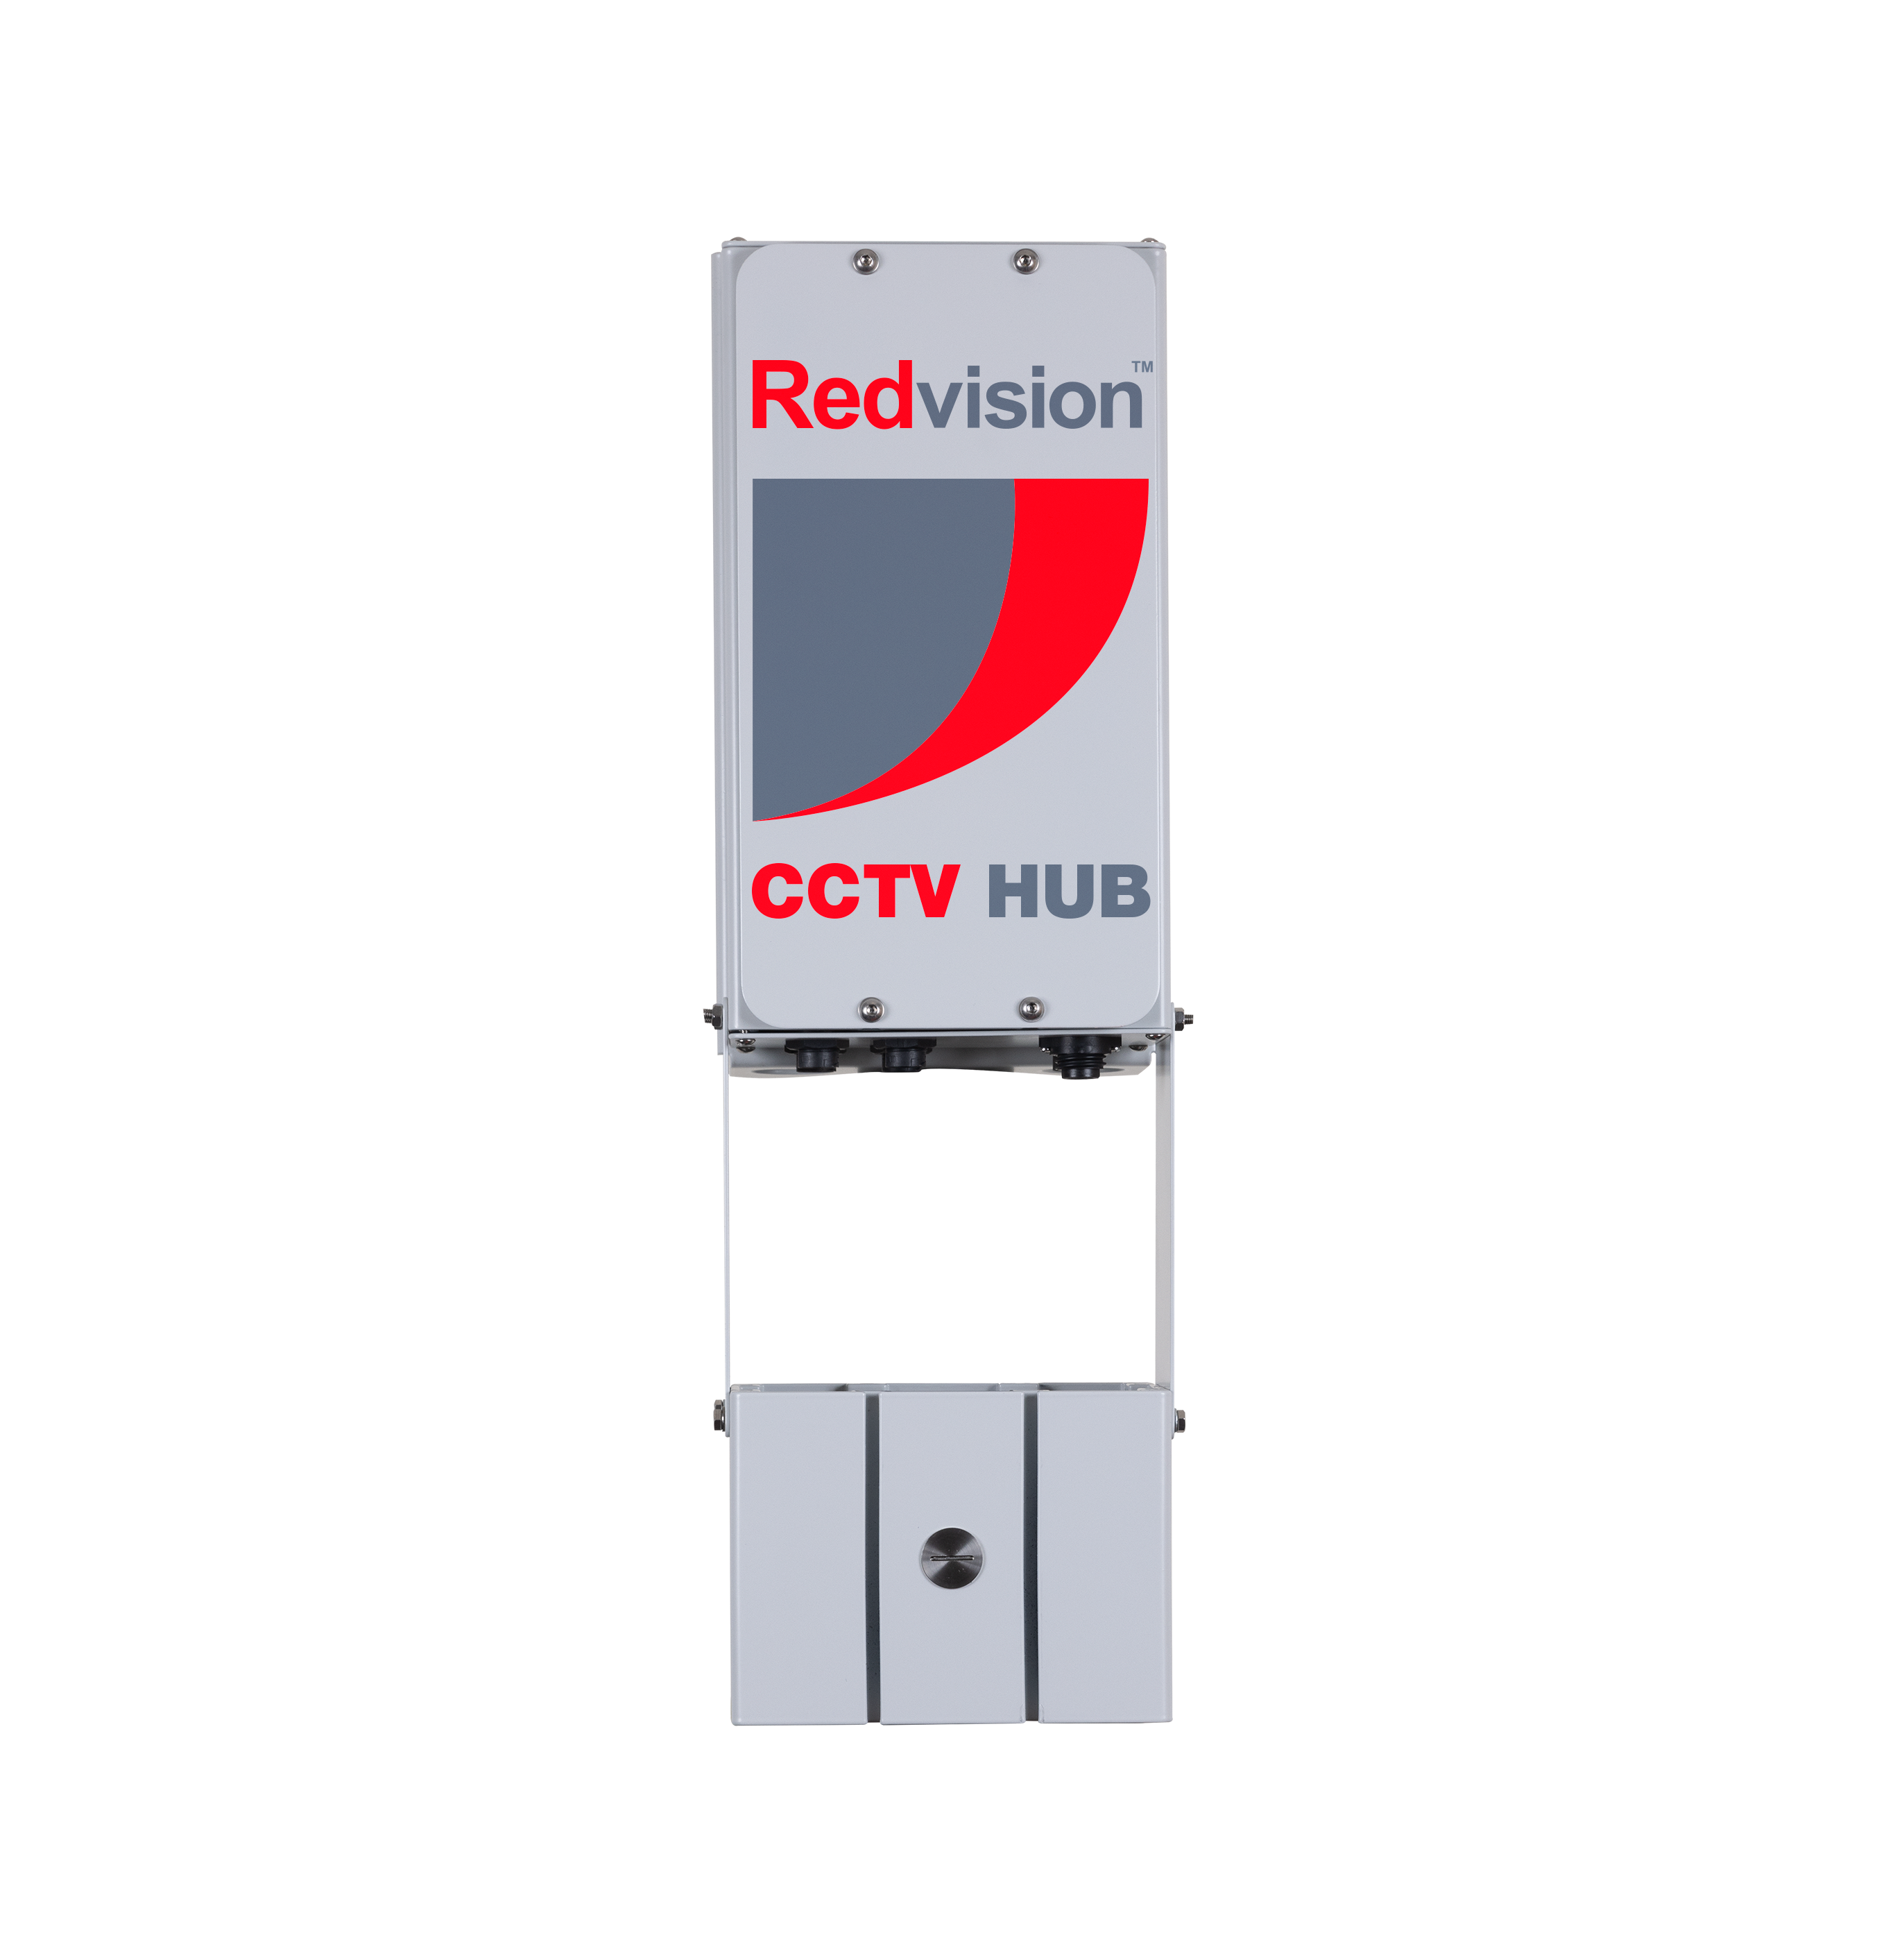 Redvision CCTV Hub™